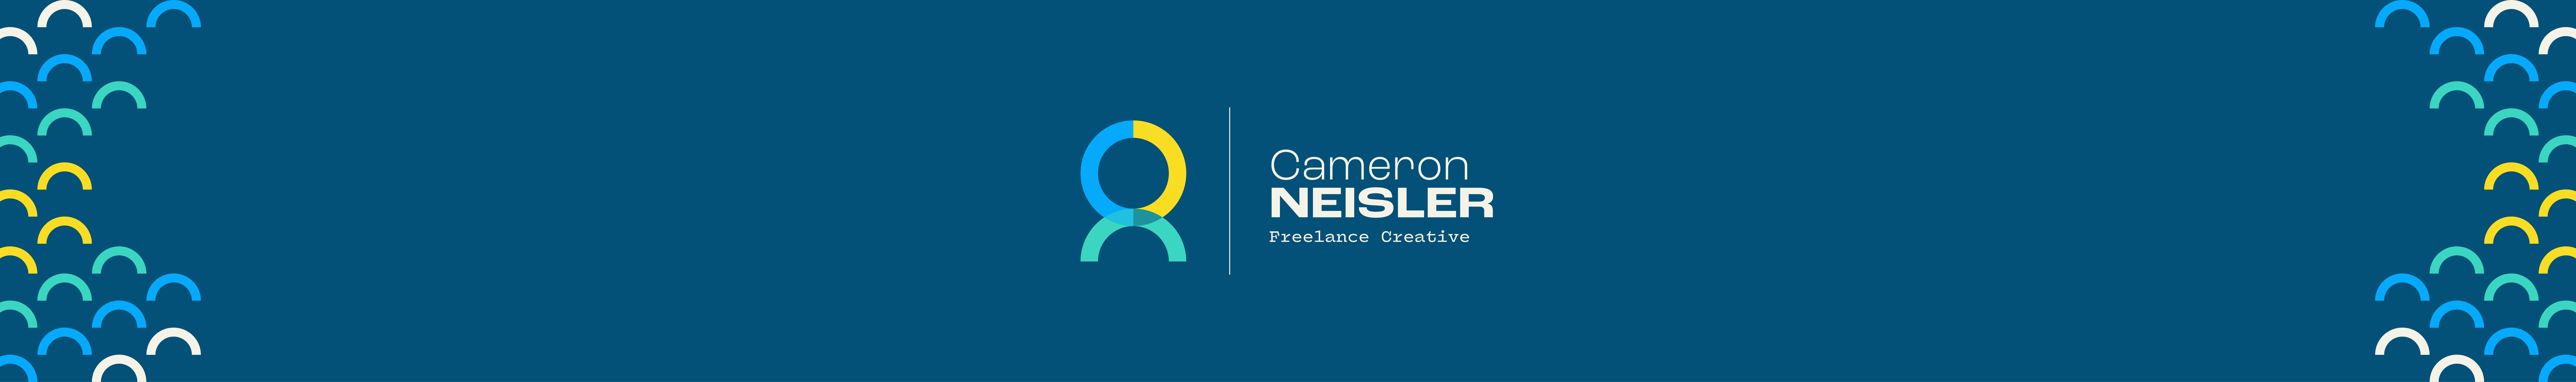 Баннер профиля Cameron Neisler